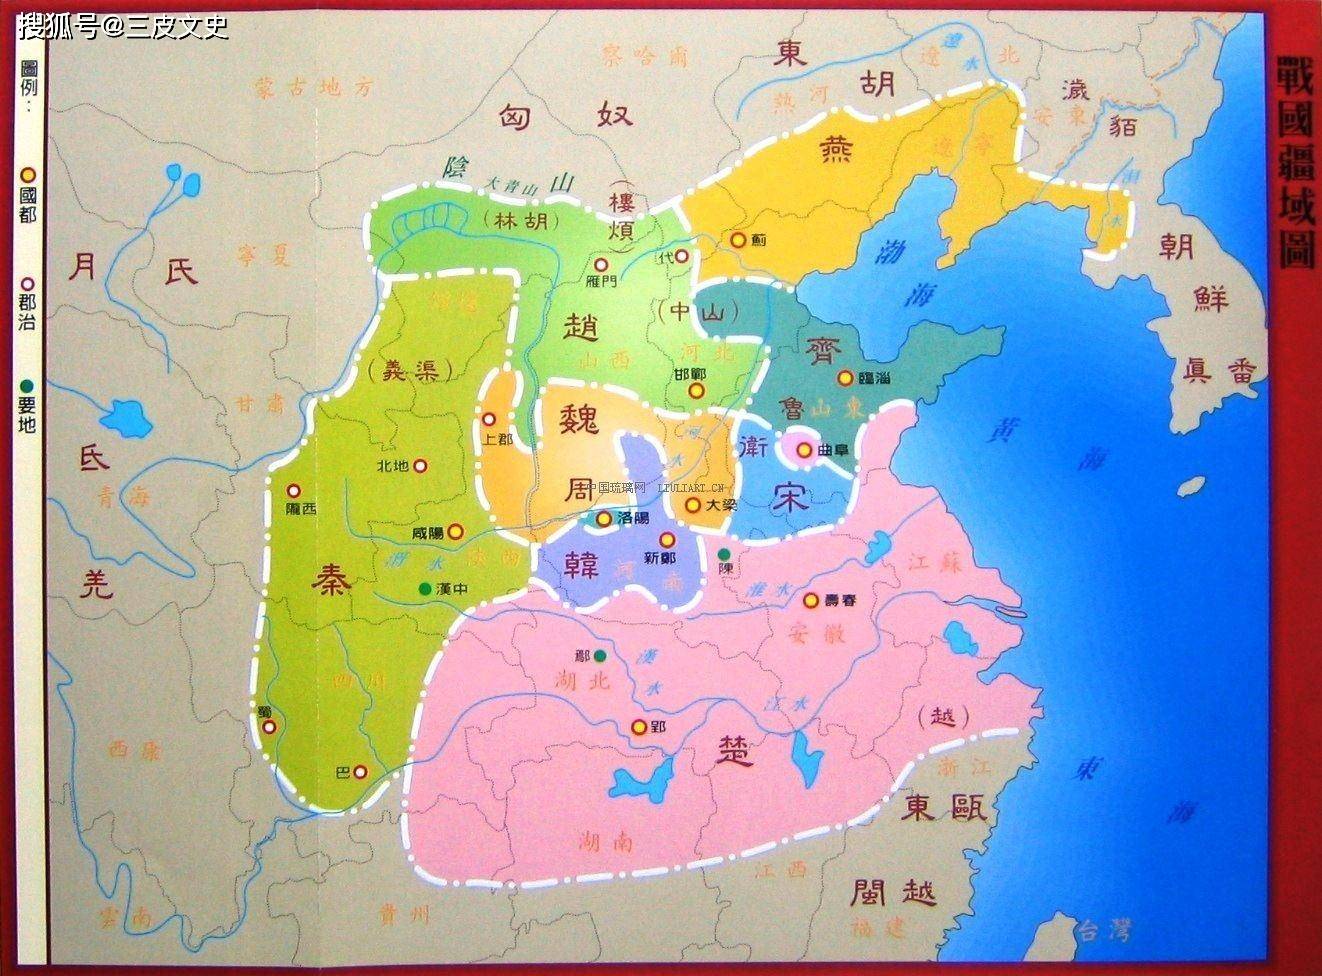 两分钟了解秦朝疆域,版图涵盖多方领域,越南朝鲜尽在其中